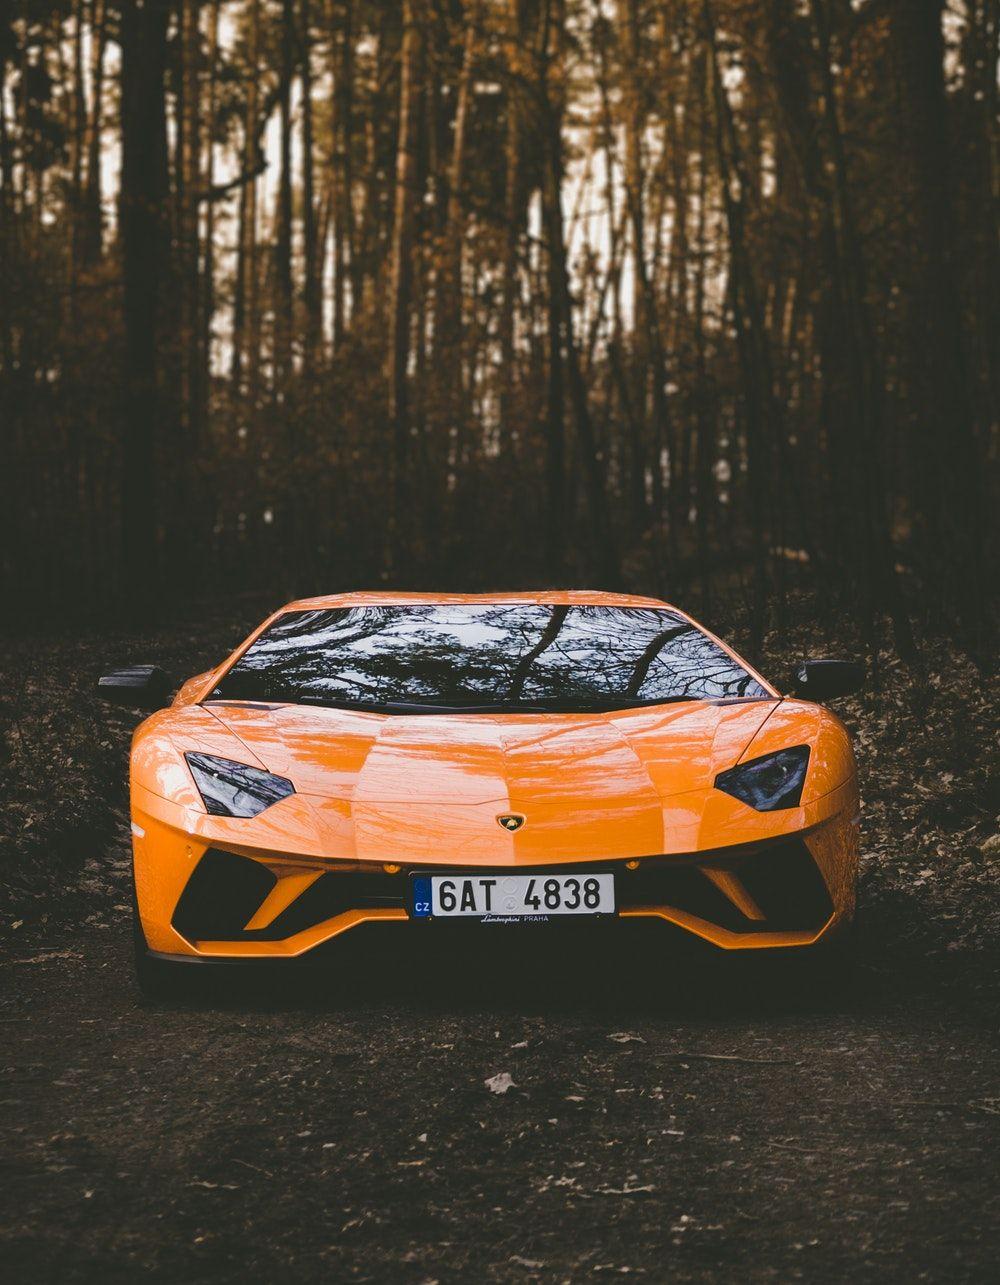 Lamborghini Picture. Download Free Image